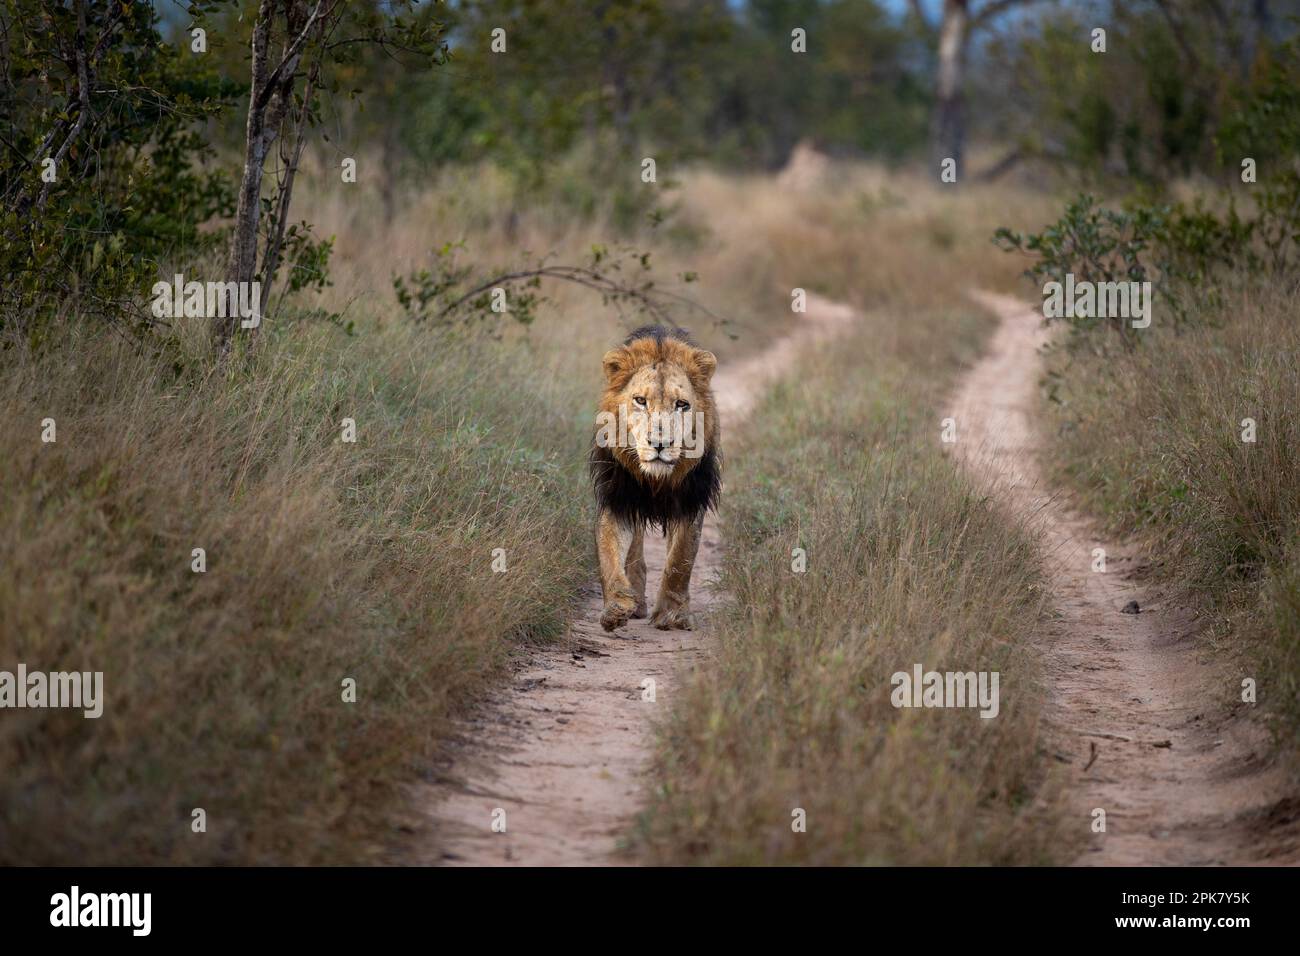 Ein männlicher Löwe, Pathera leo, läuft eine Straße entlang. Stockfoto